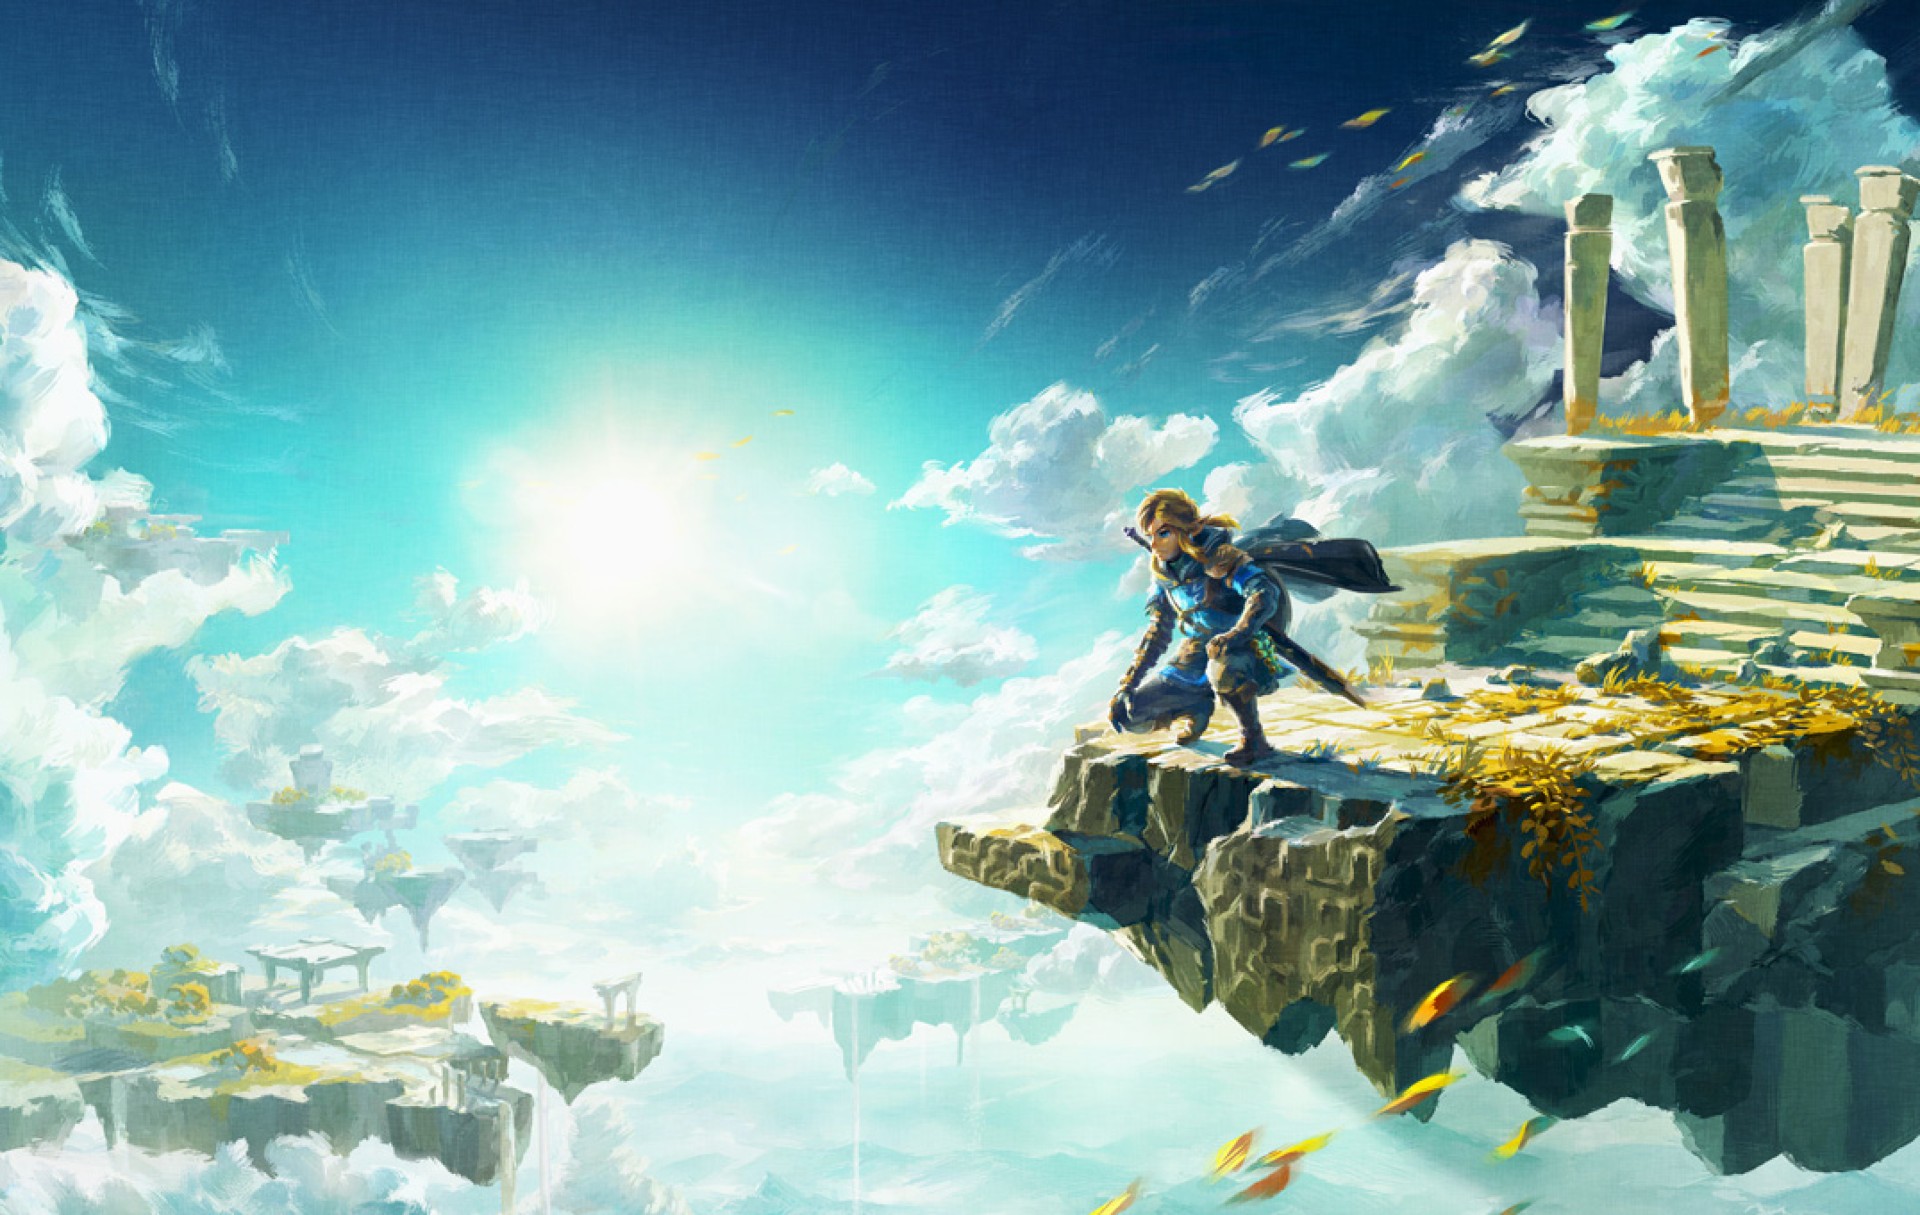 นับถอยหลัง 100 วัน ก่อน The Legend of Zelda: Tears of the Kingdom วางจำหน่าย